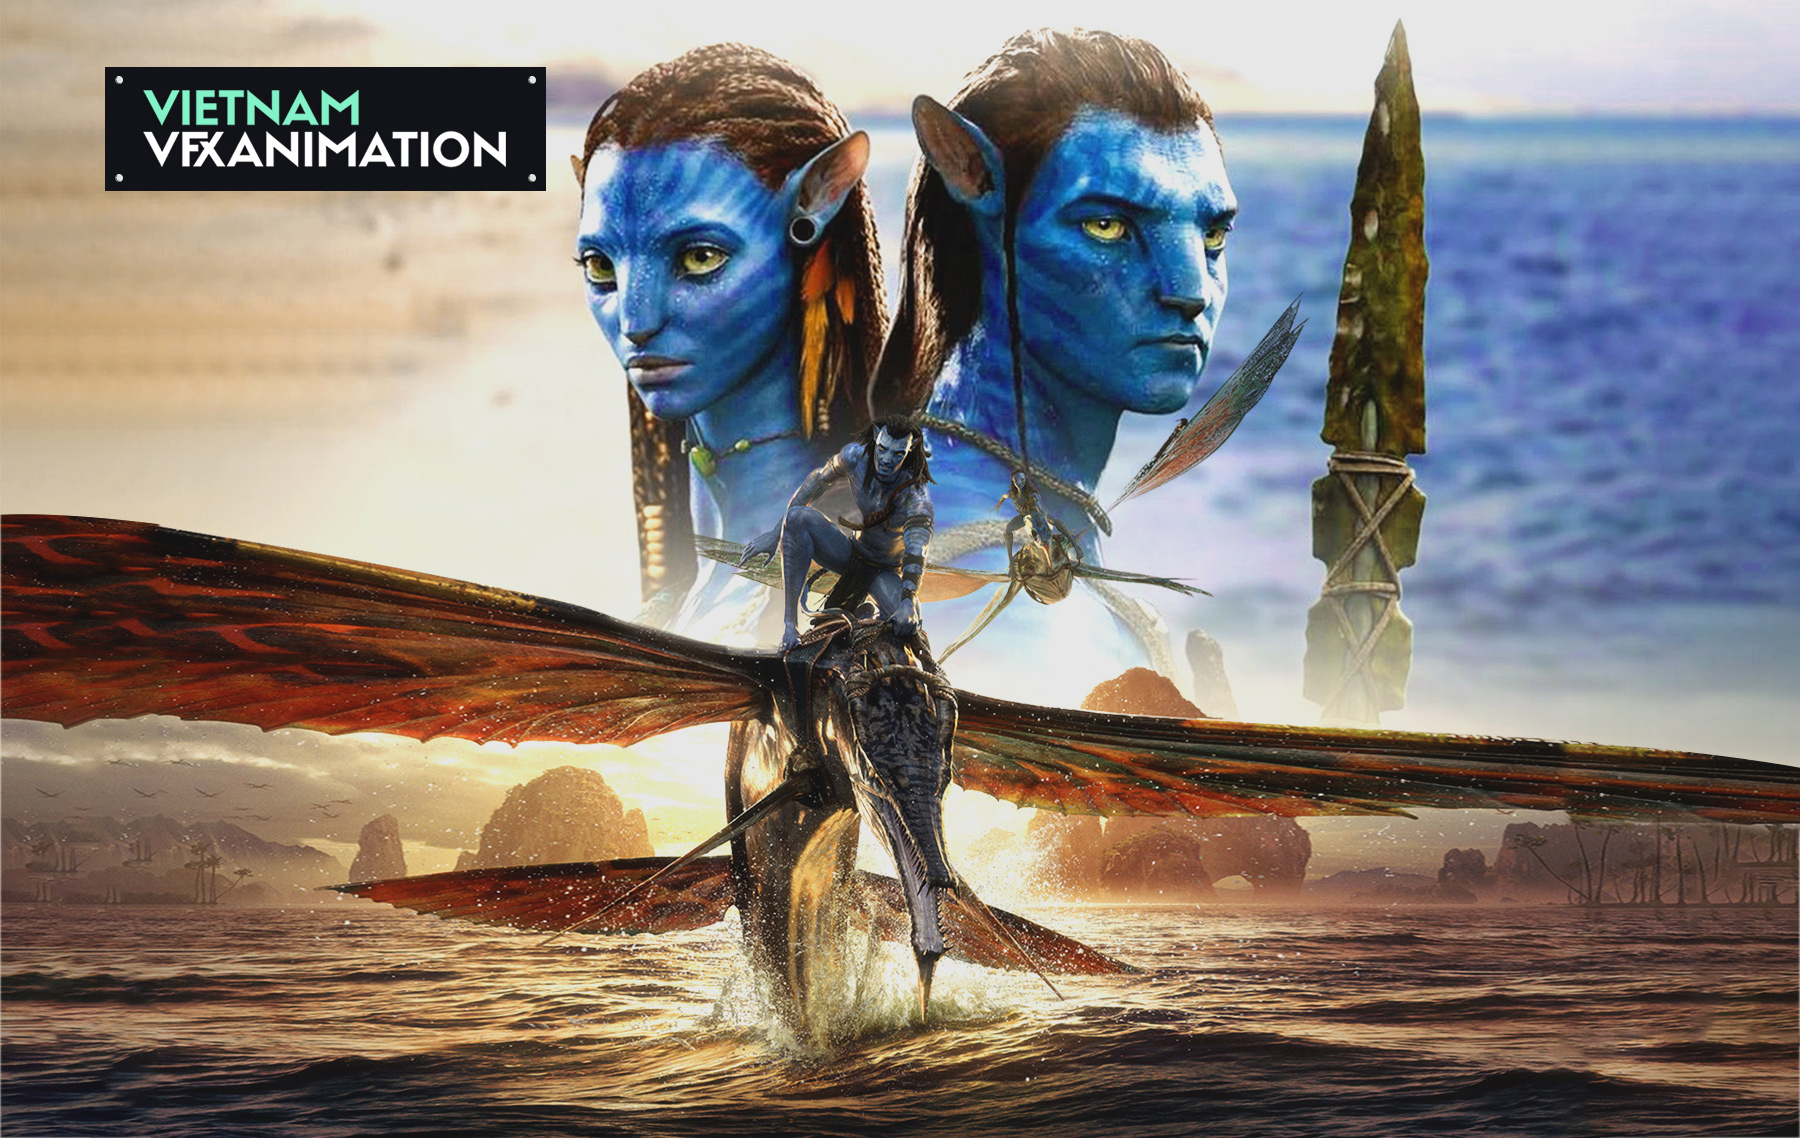 Avatar The Way of Water Những điểm trừ và điểm cộng